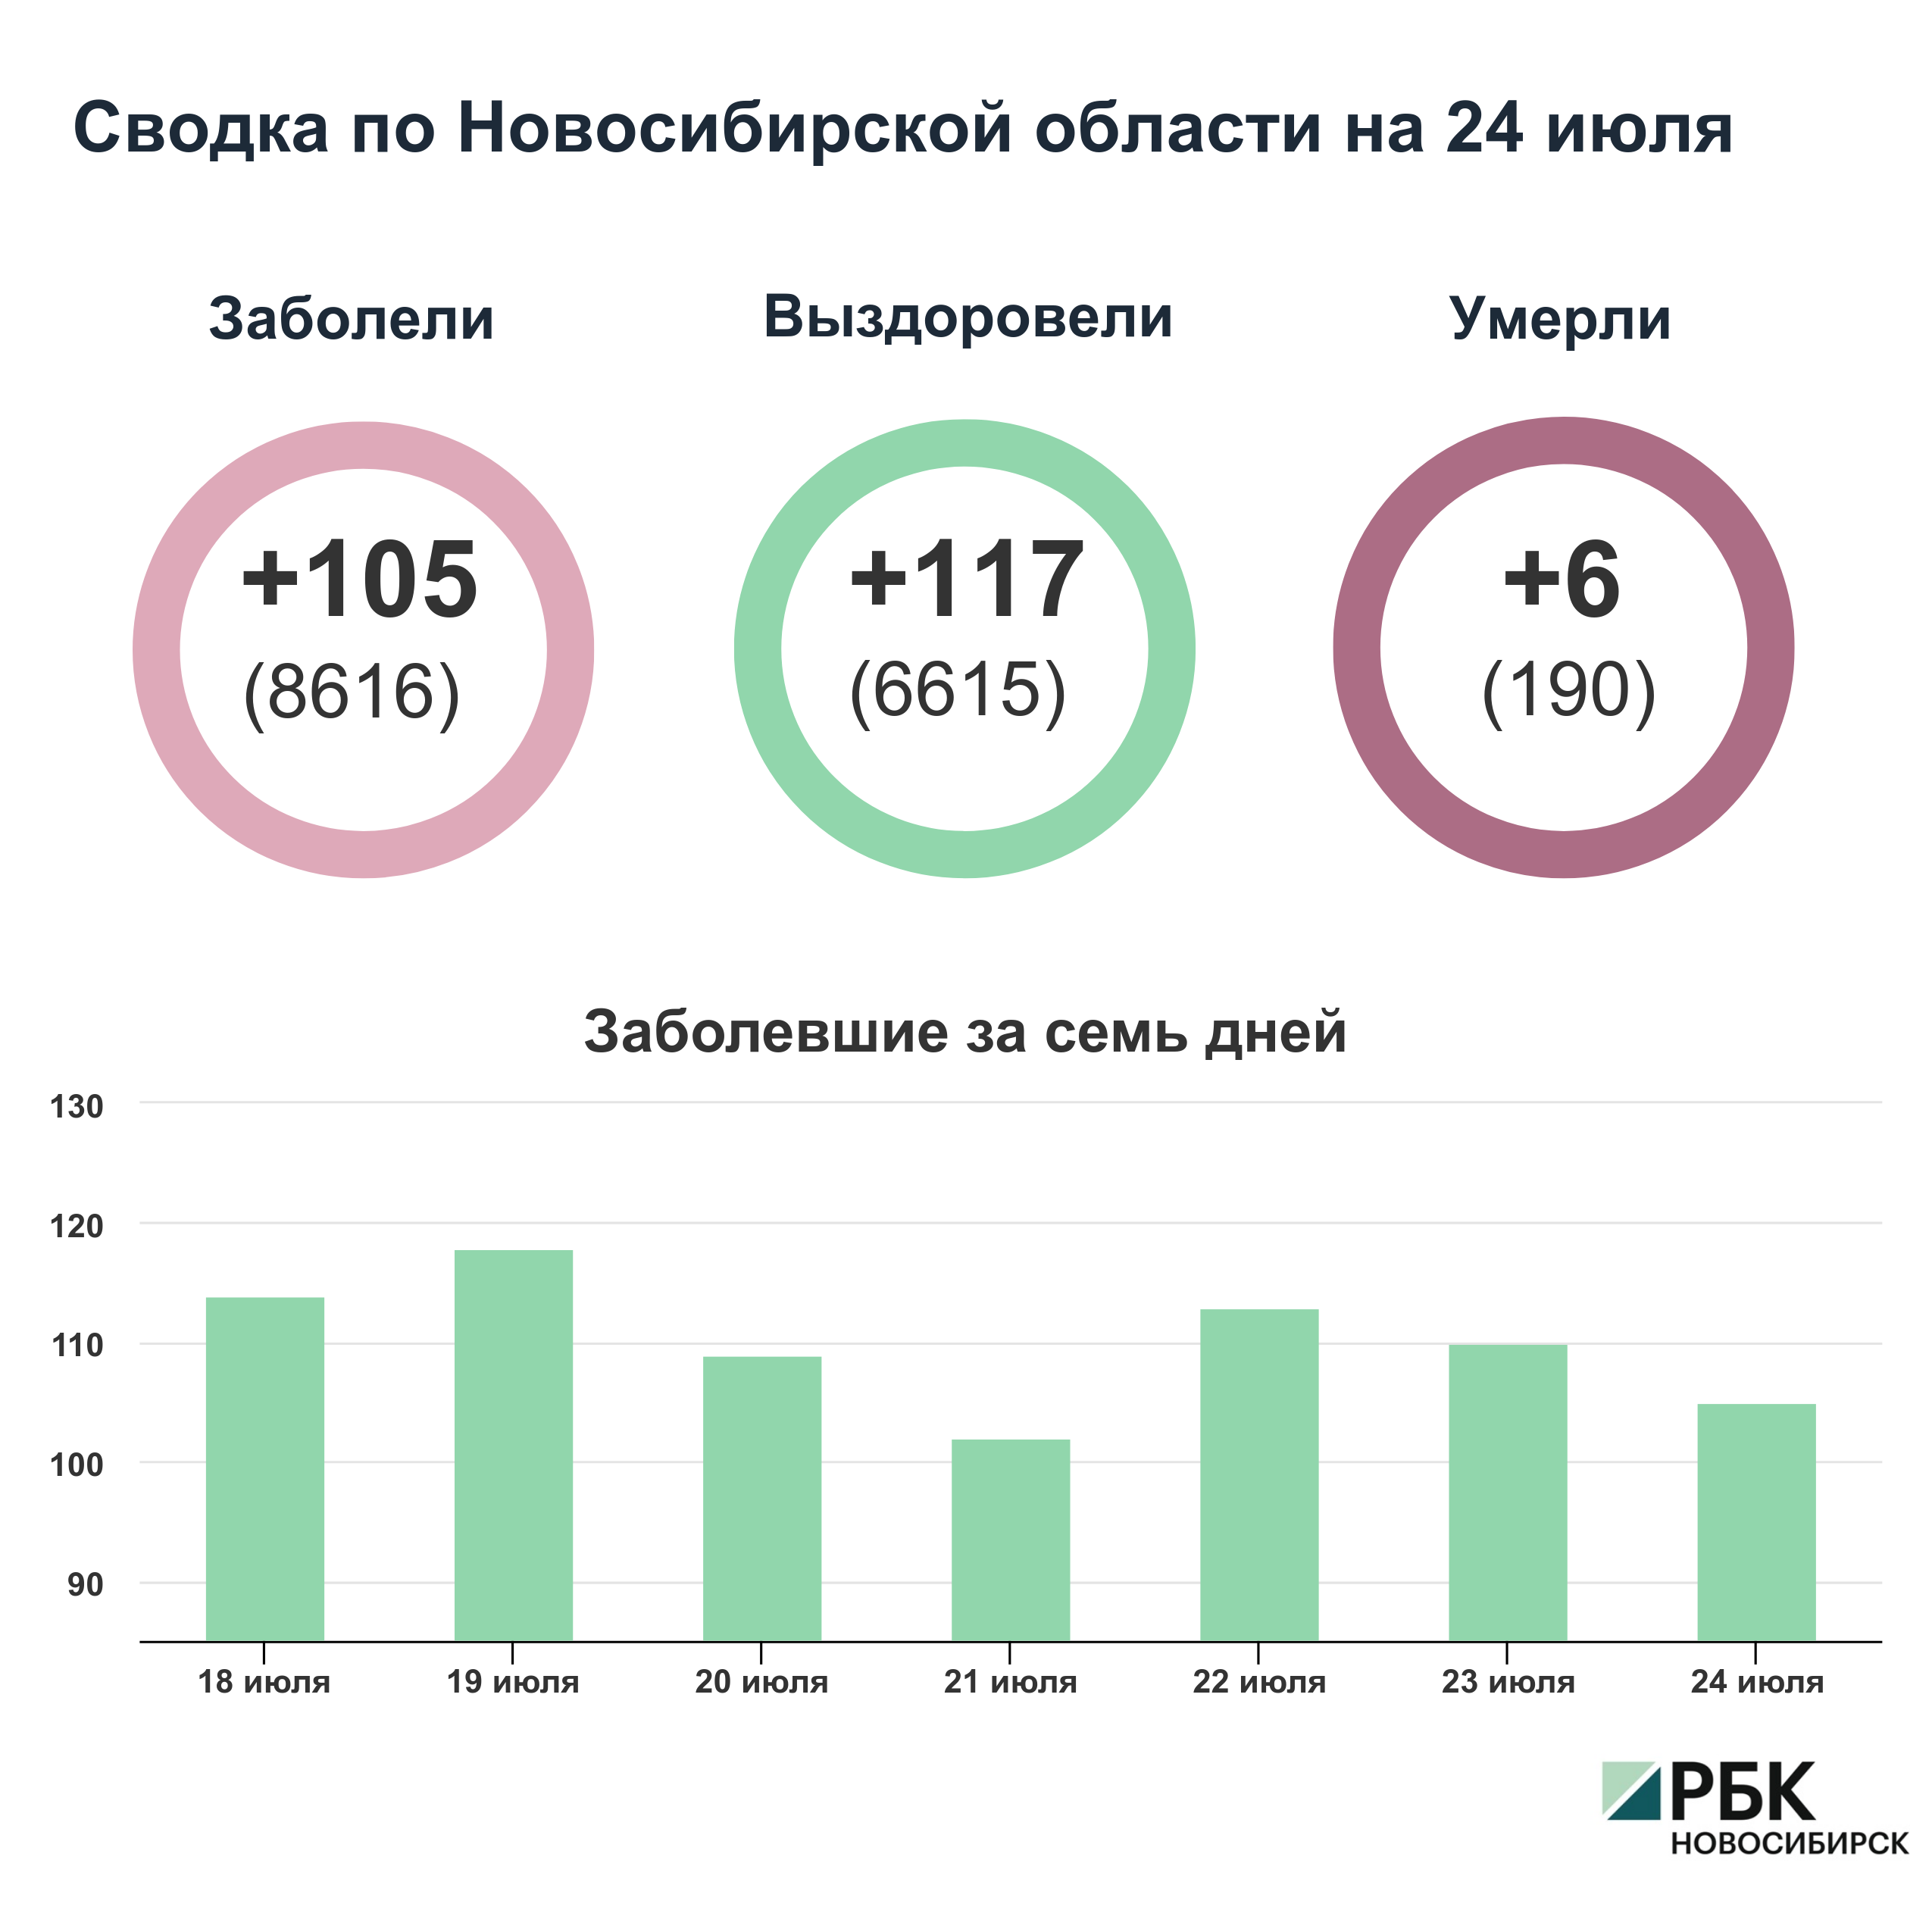 Коронавирус в Новосибирске: сводка на 24 июля